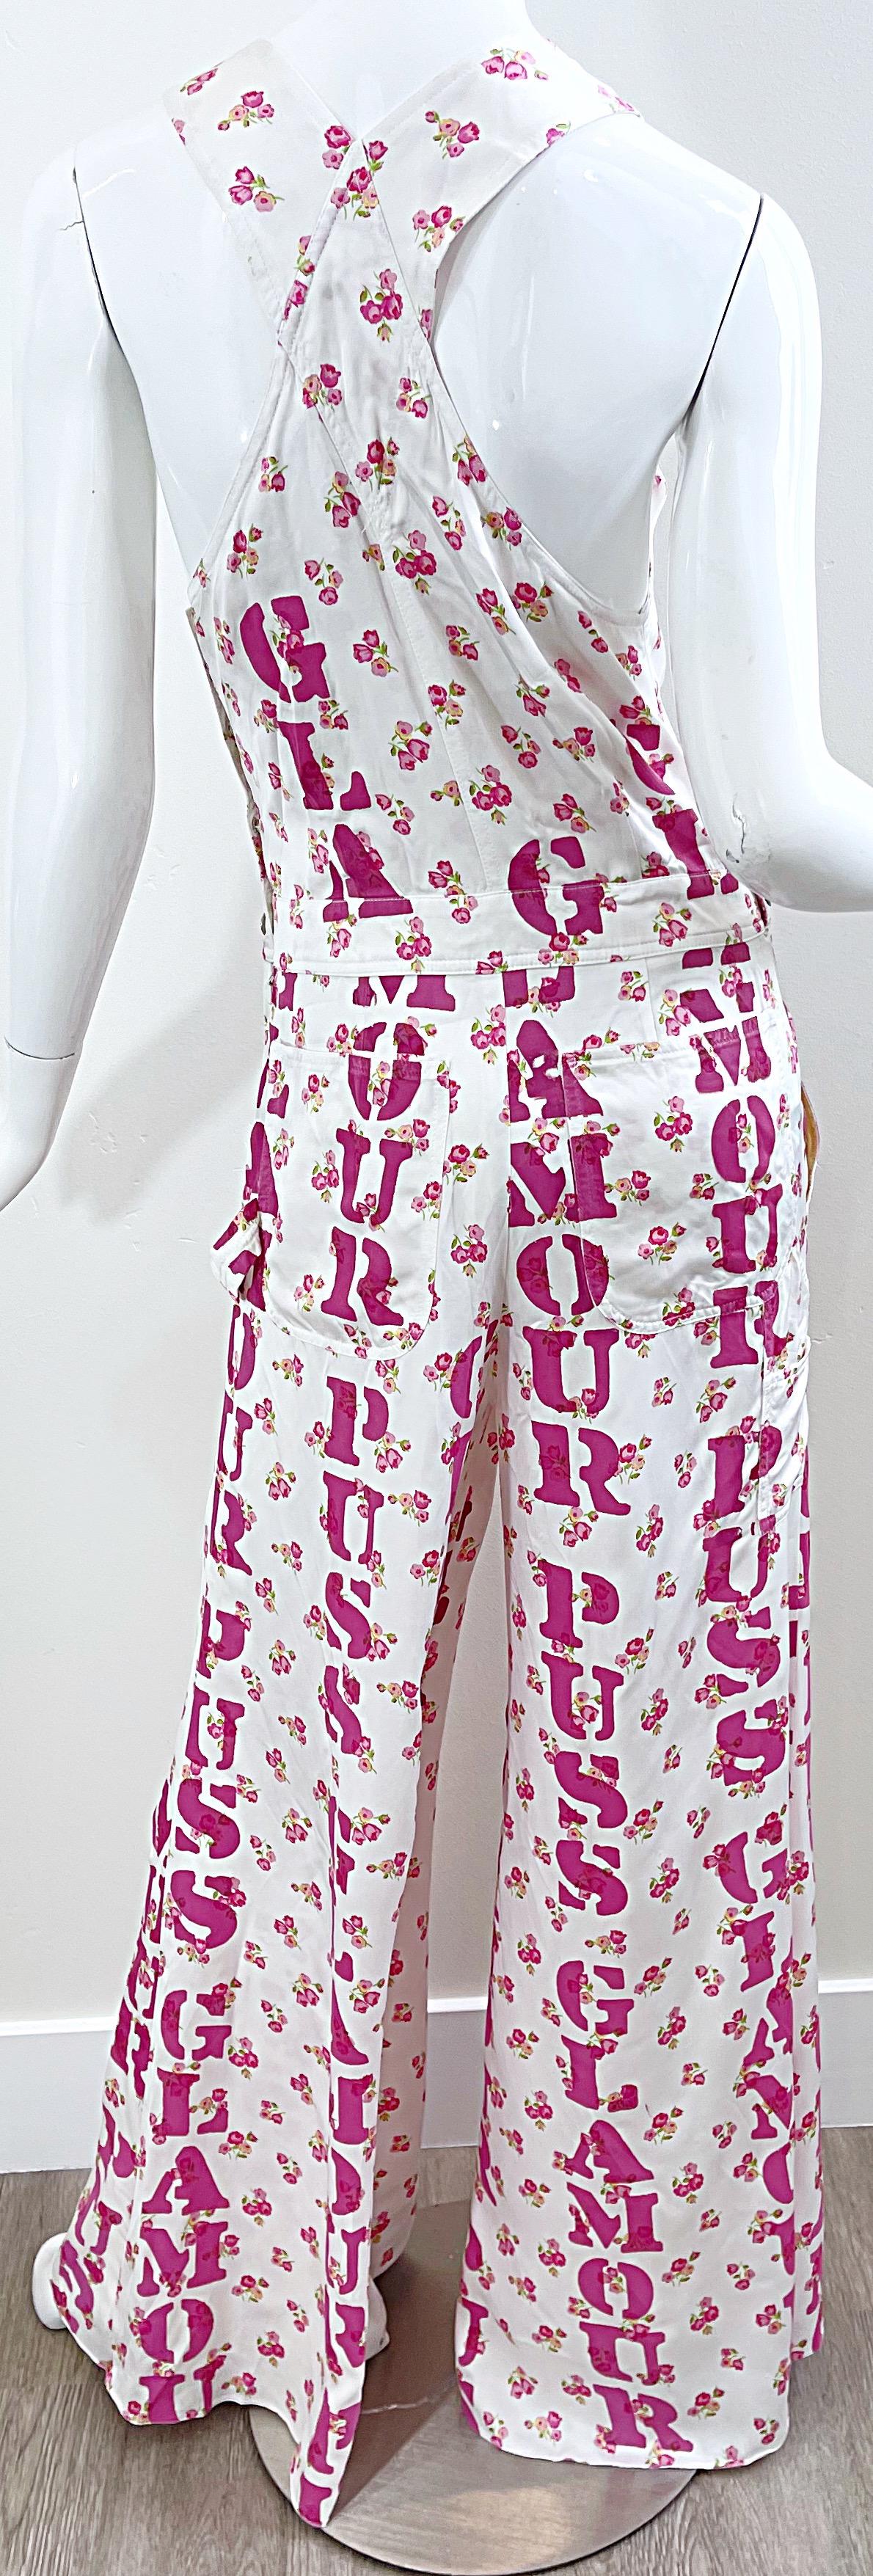 Moschino Couture Resort 2020 Größe 8 Glamour Puss Overalls mit Blumendruck in Übergröße 10